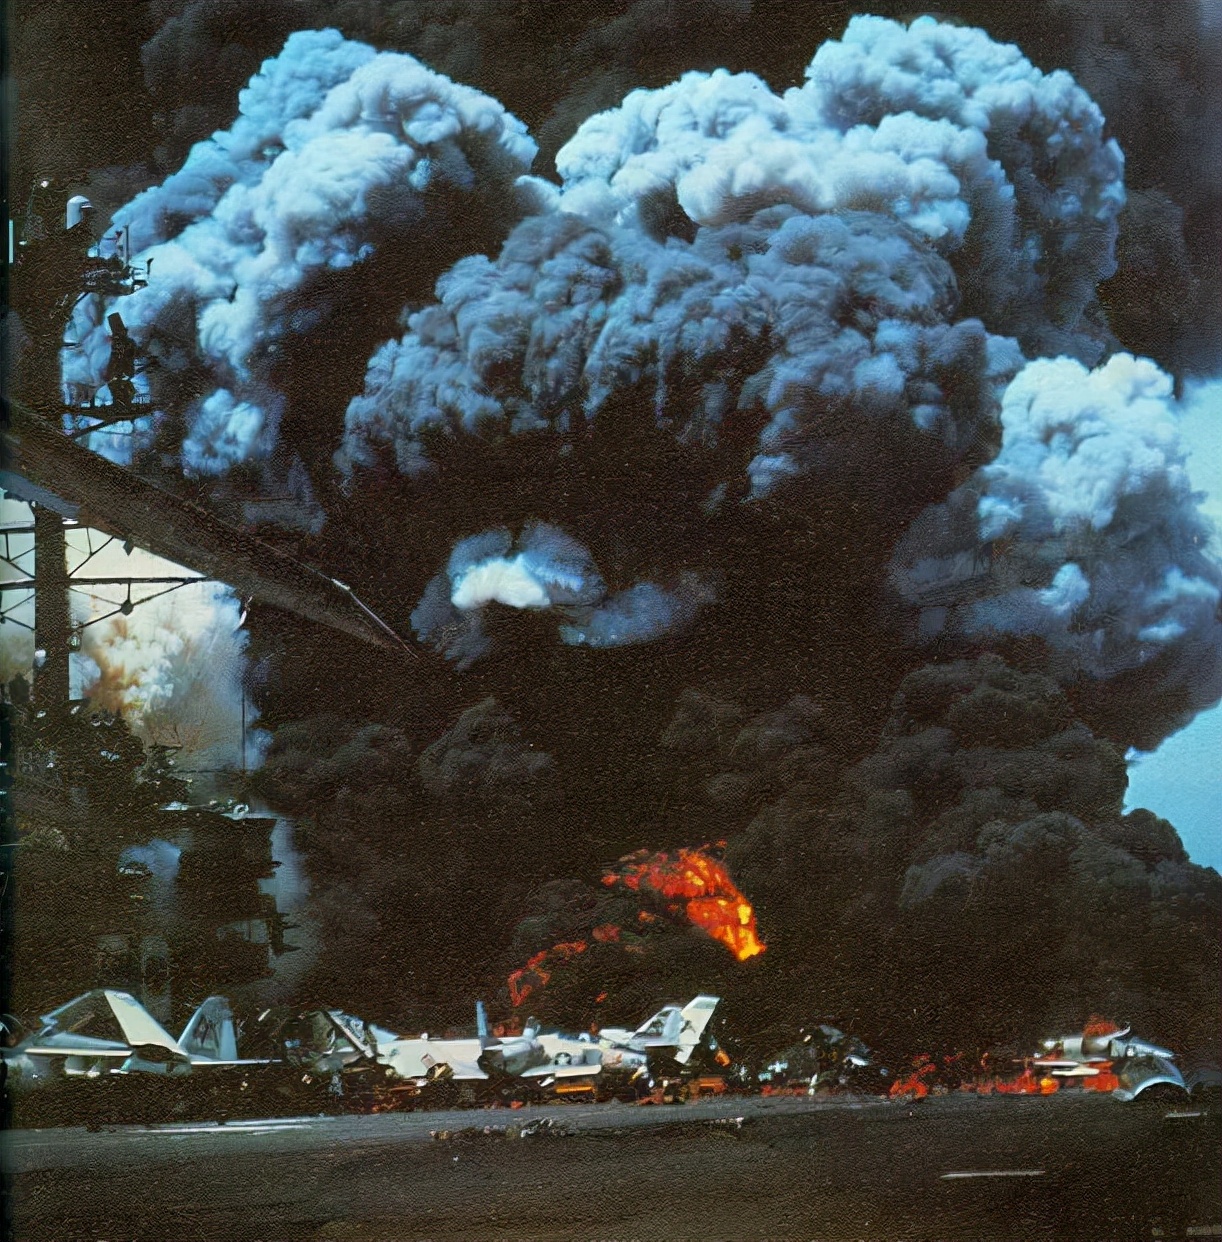 1222爆炸事故图片